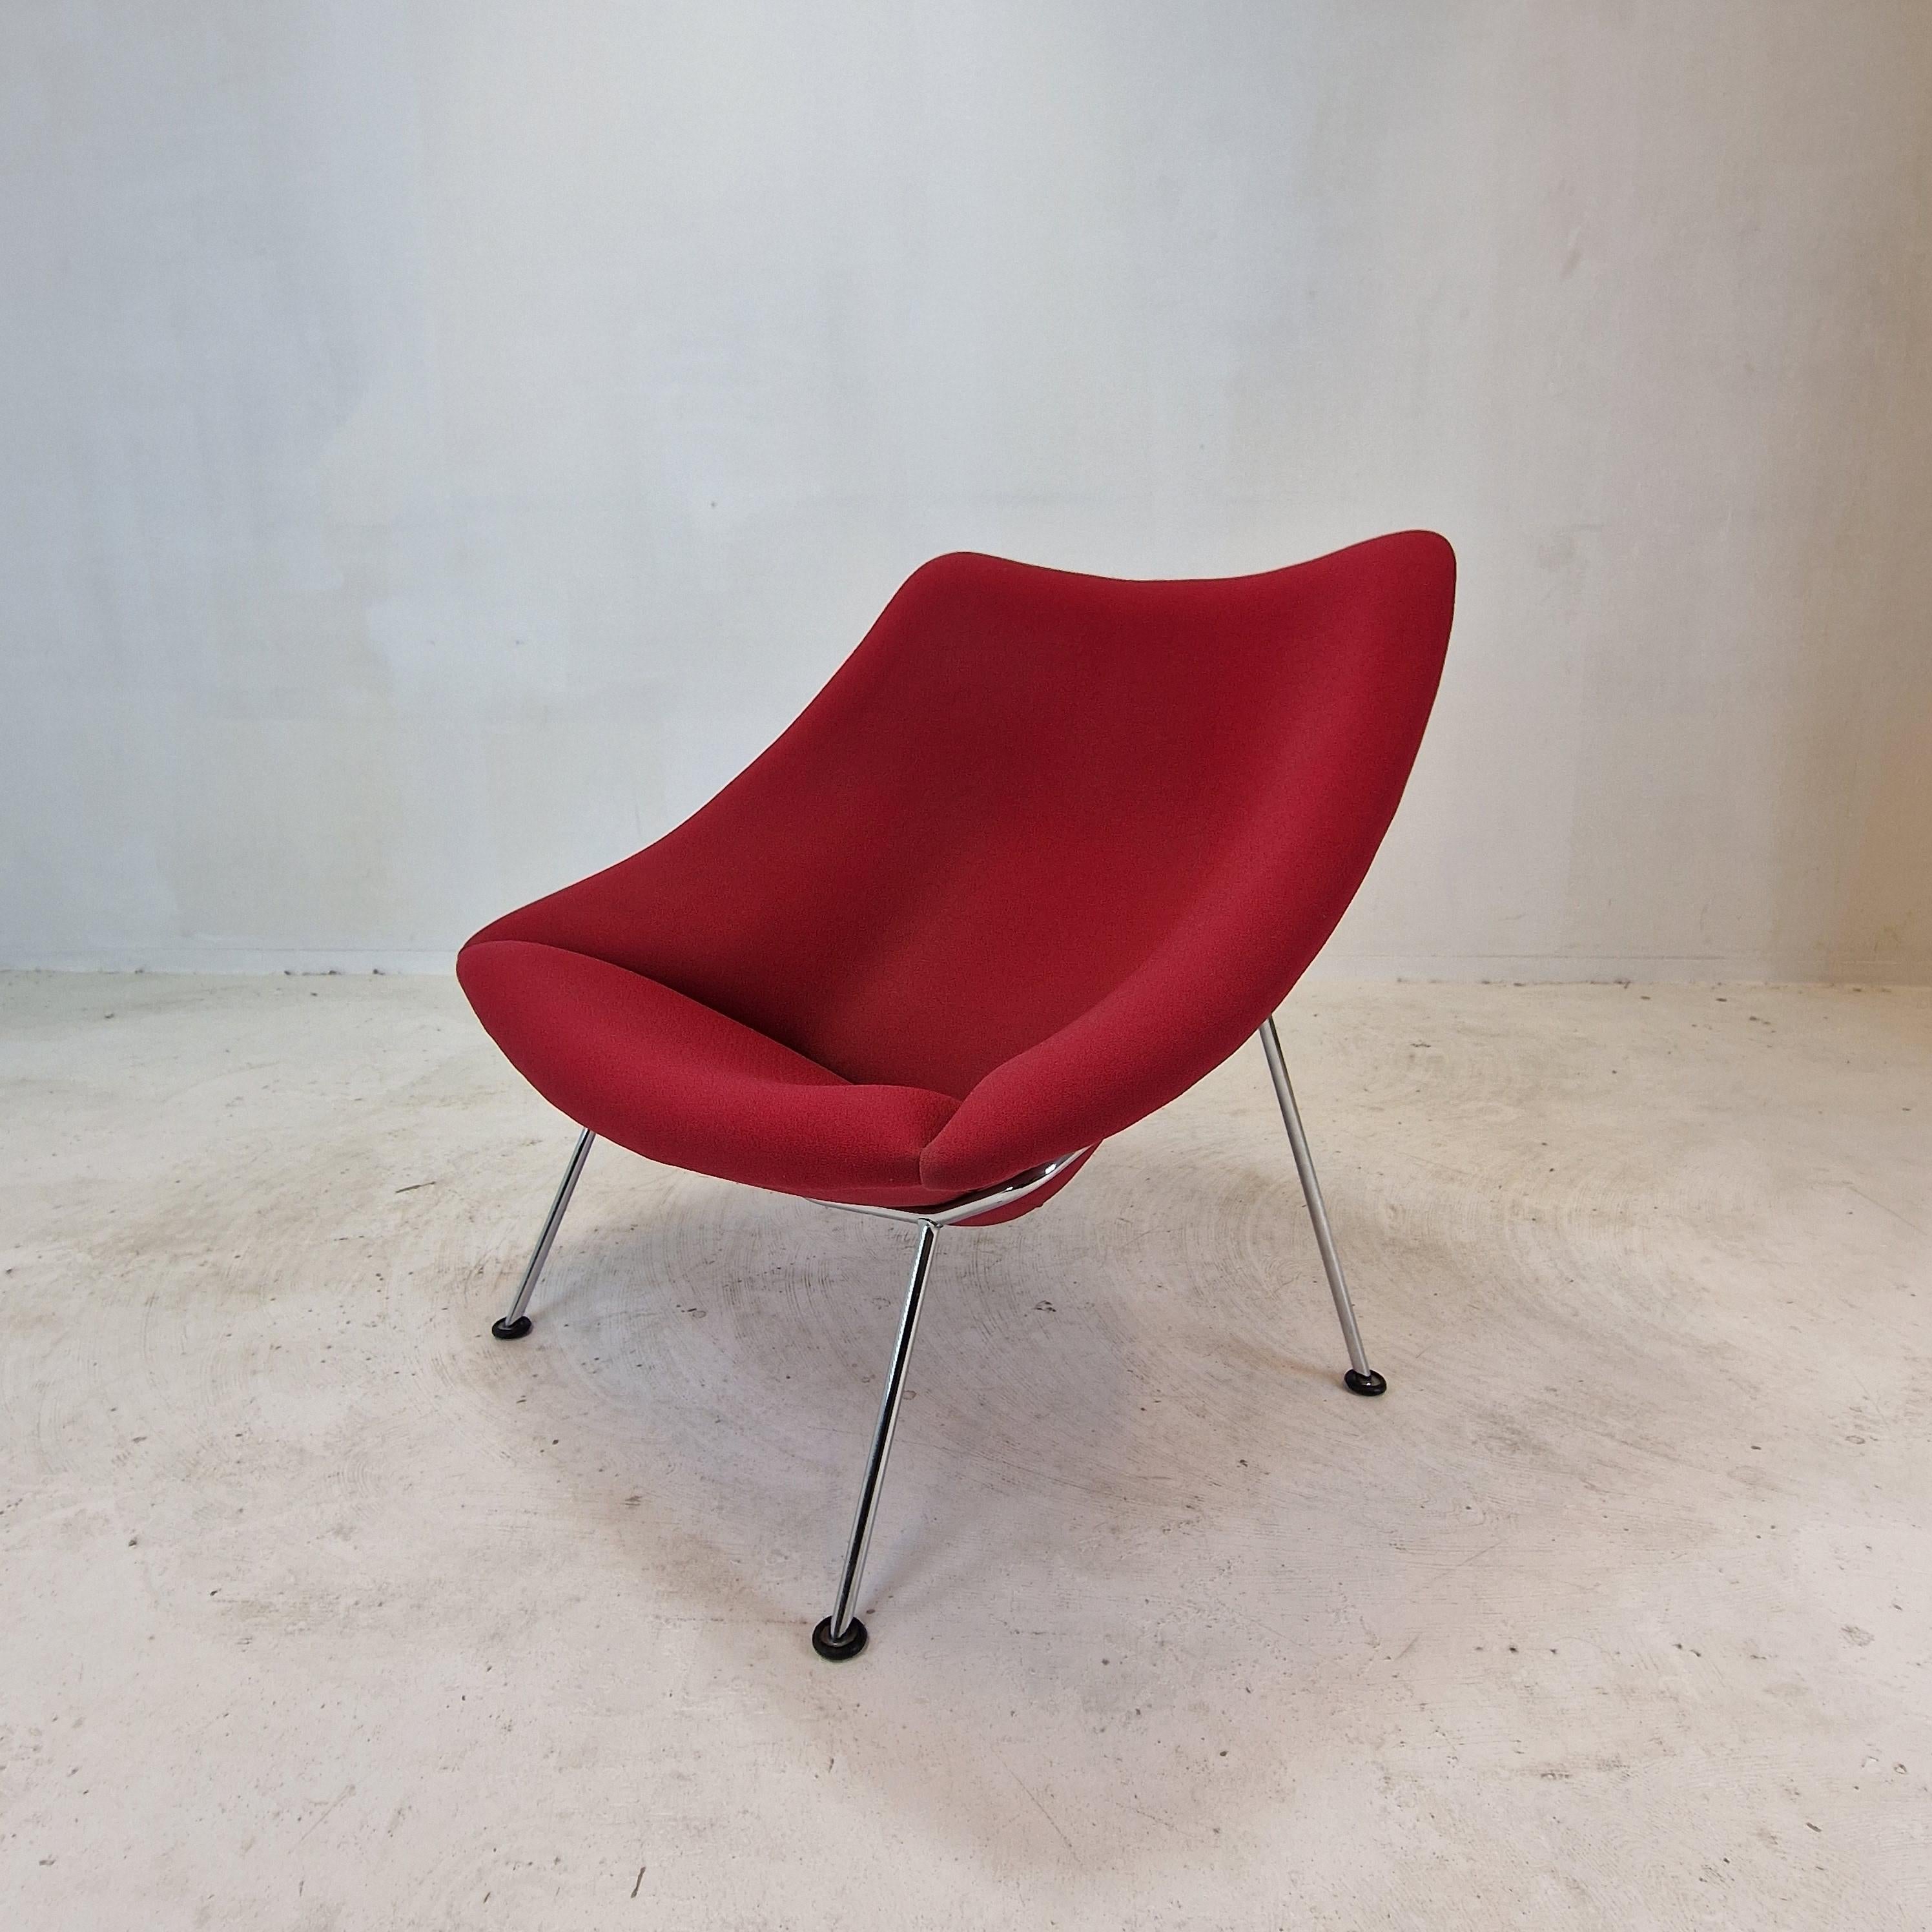 La célèbre et très confortable chaise Artifort Oyster de Pierre Paulin. 

Conçue au début des années 60, cette chaise particulière est fabriquée dans les années 80. 
Les pieds sont en métal chromé.

Cette belle chaise a le tissu en laine d'origine,